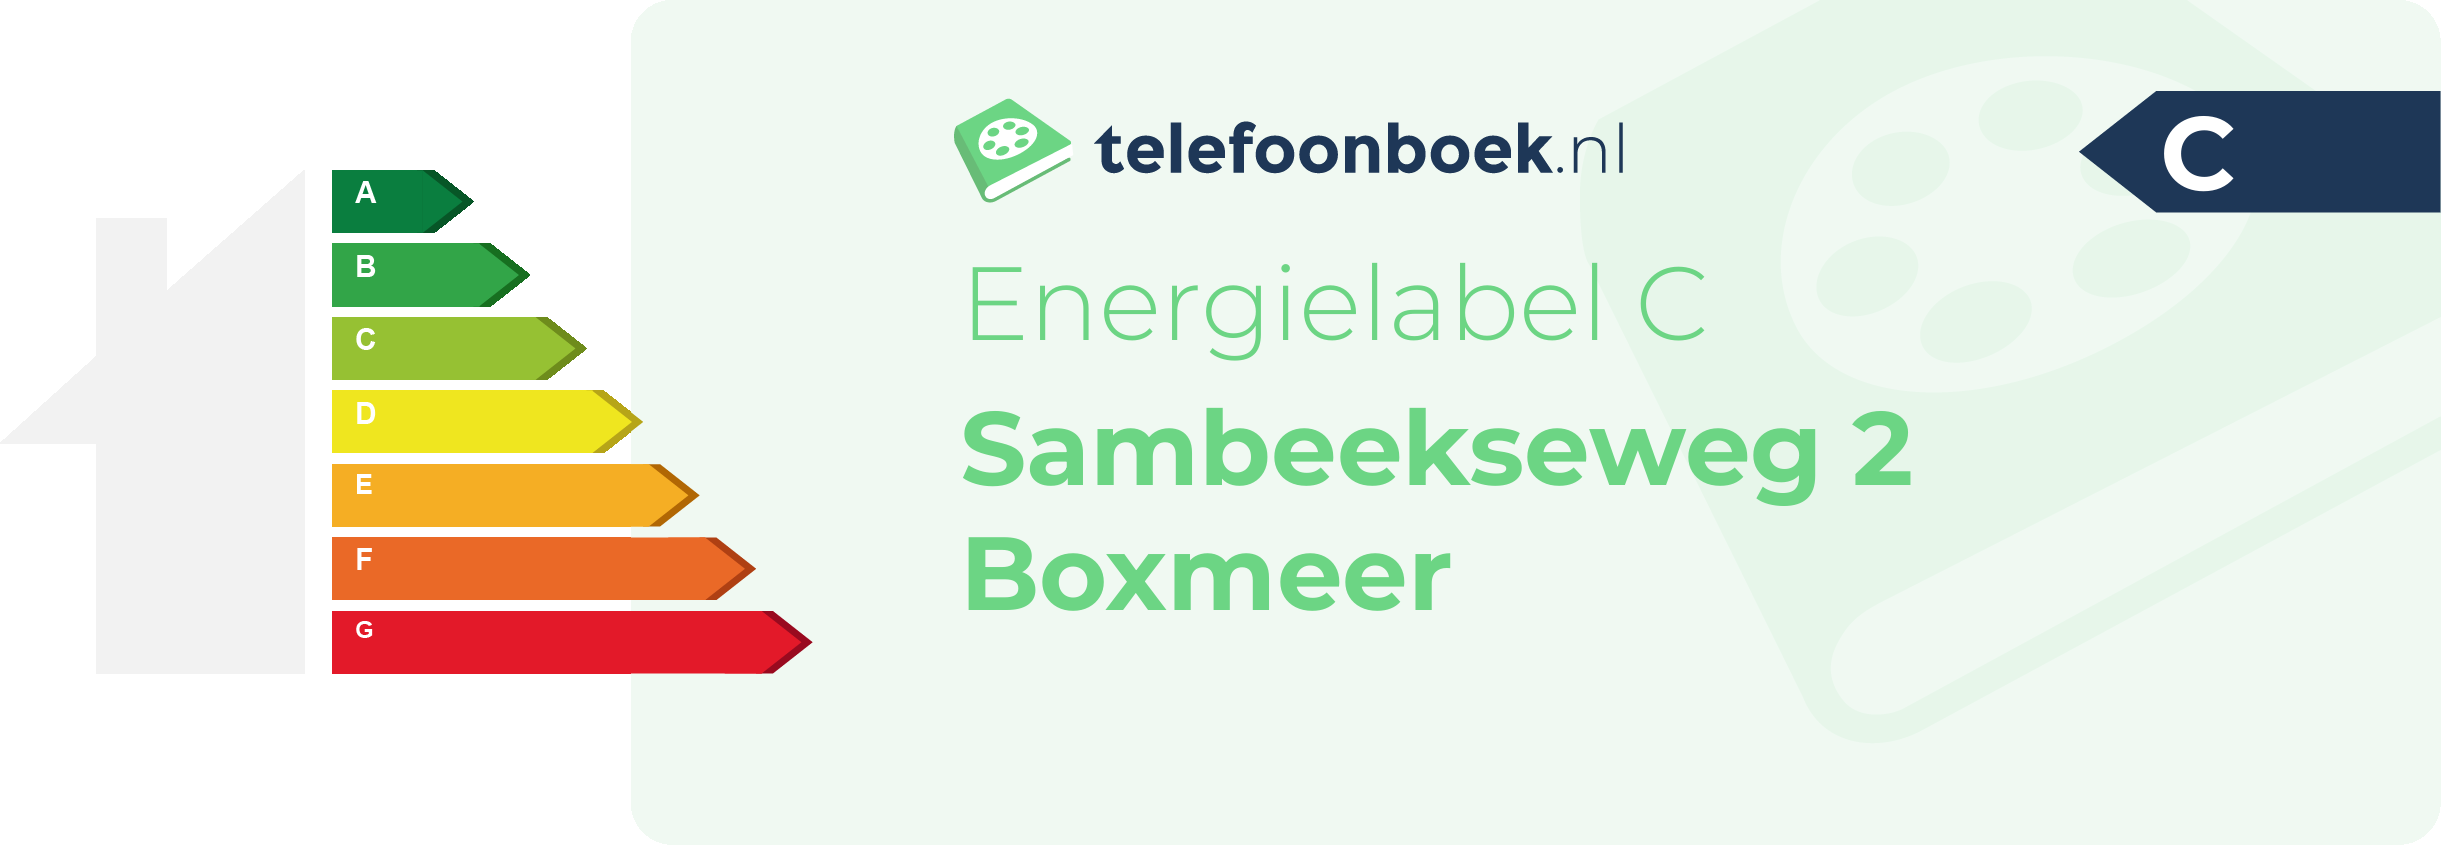 Energielabel Sambeekseweg 2 Boxmeer